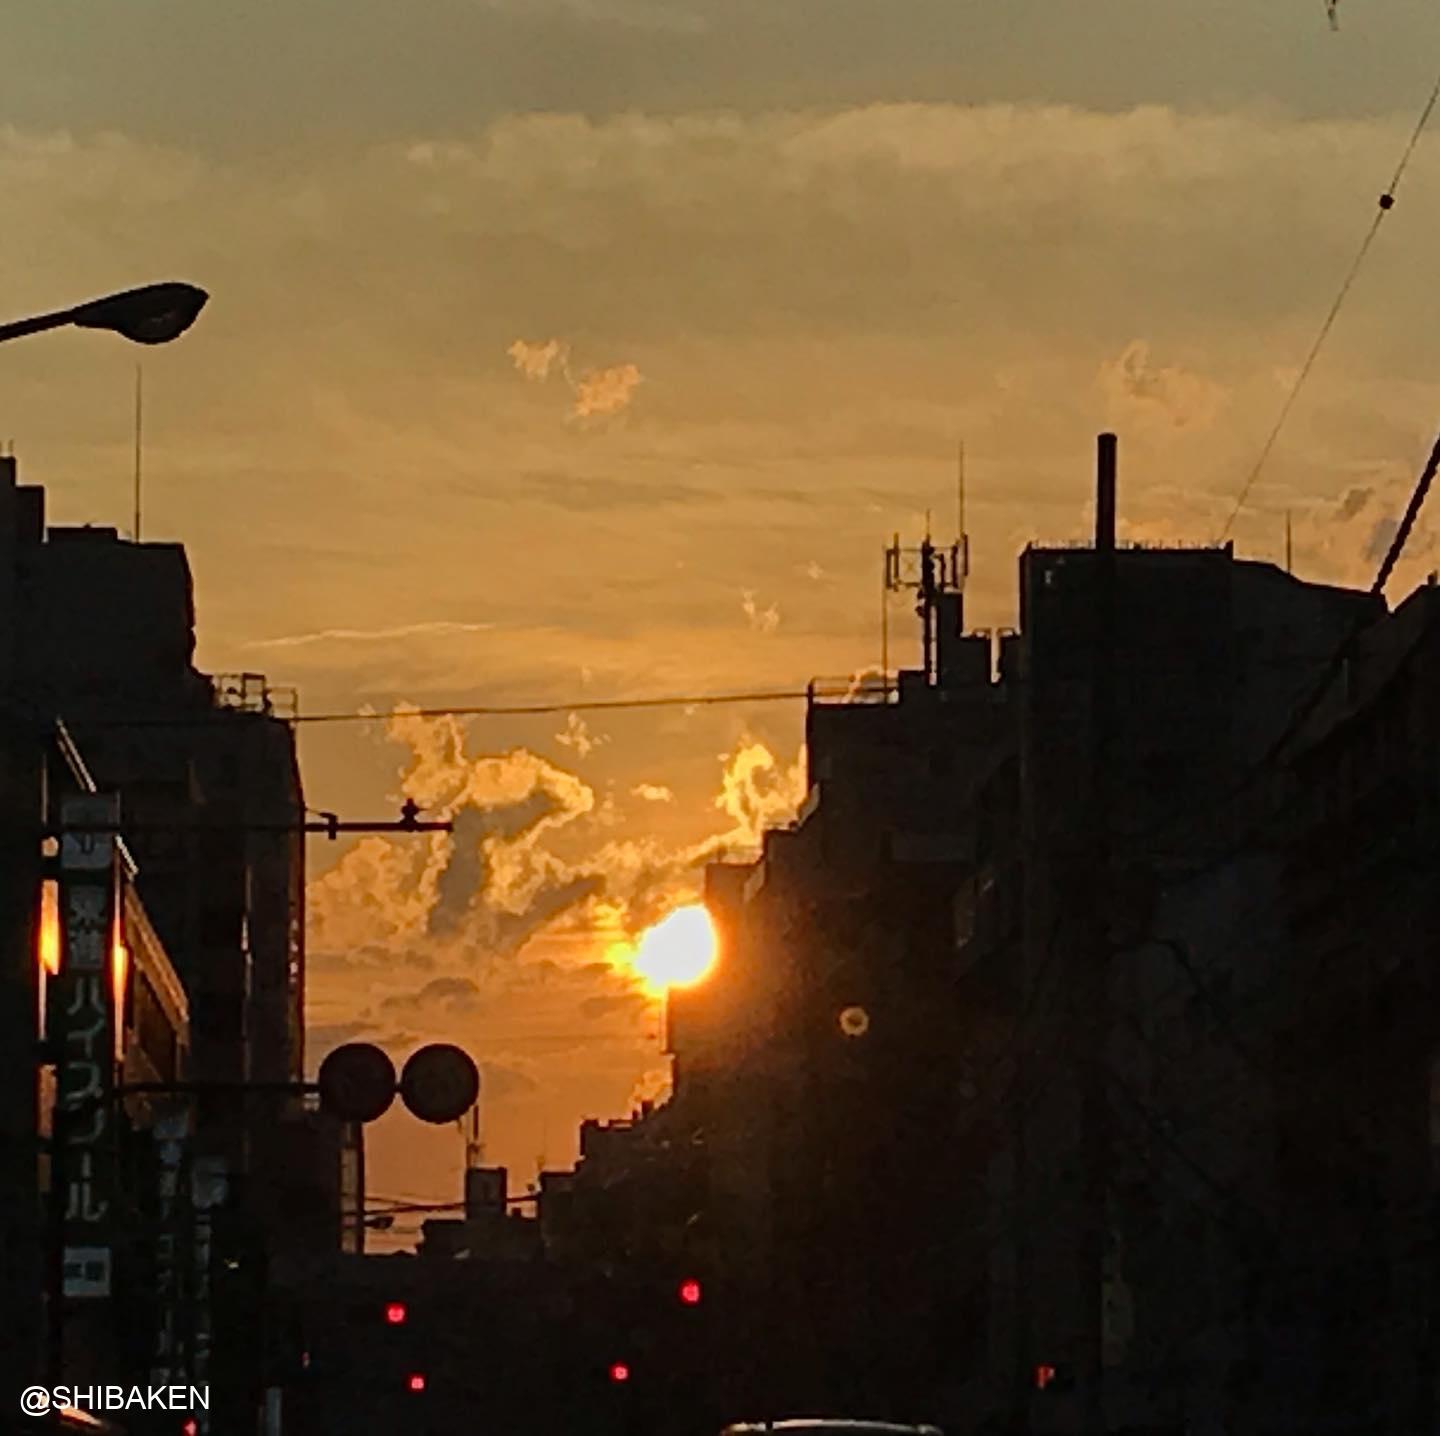 #車窓からの夕陽 (Instagram)